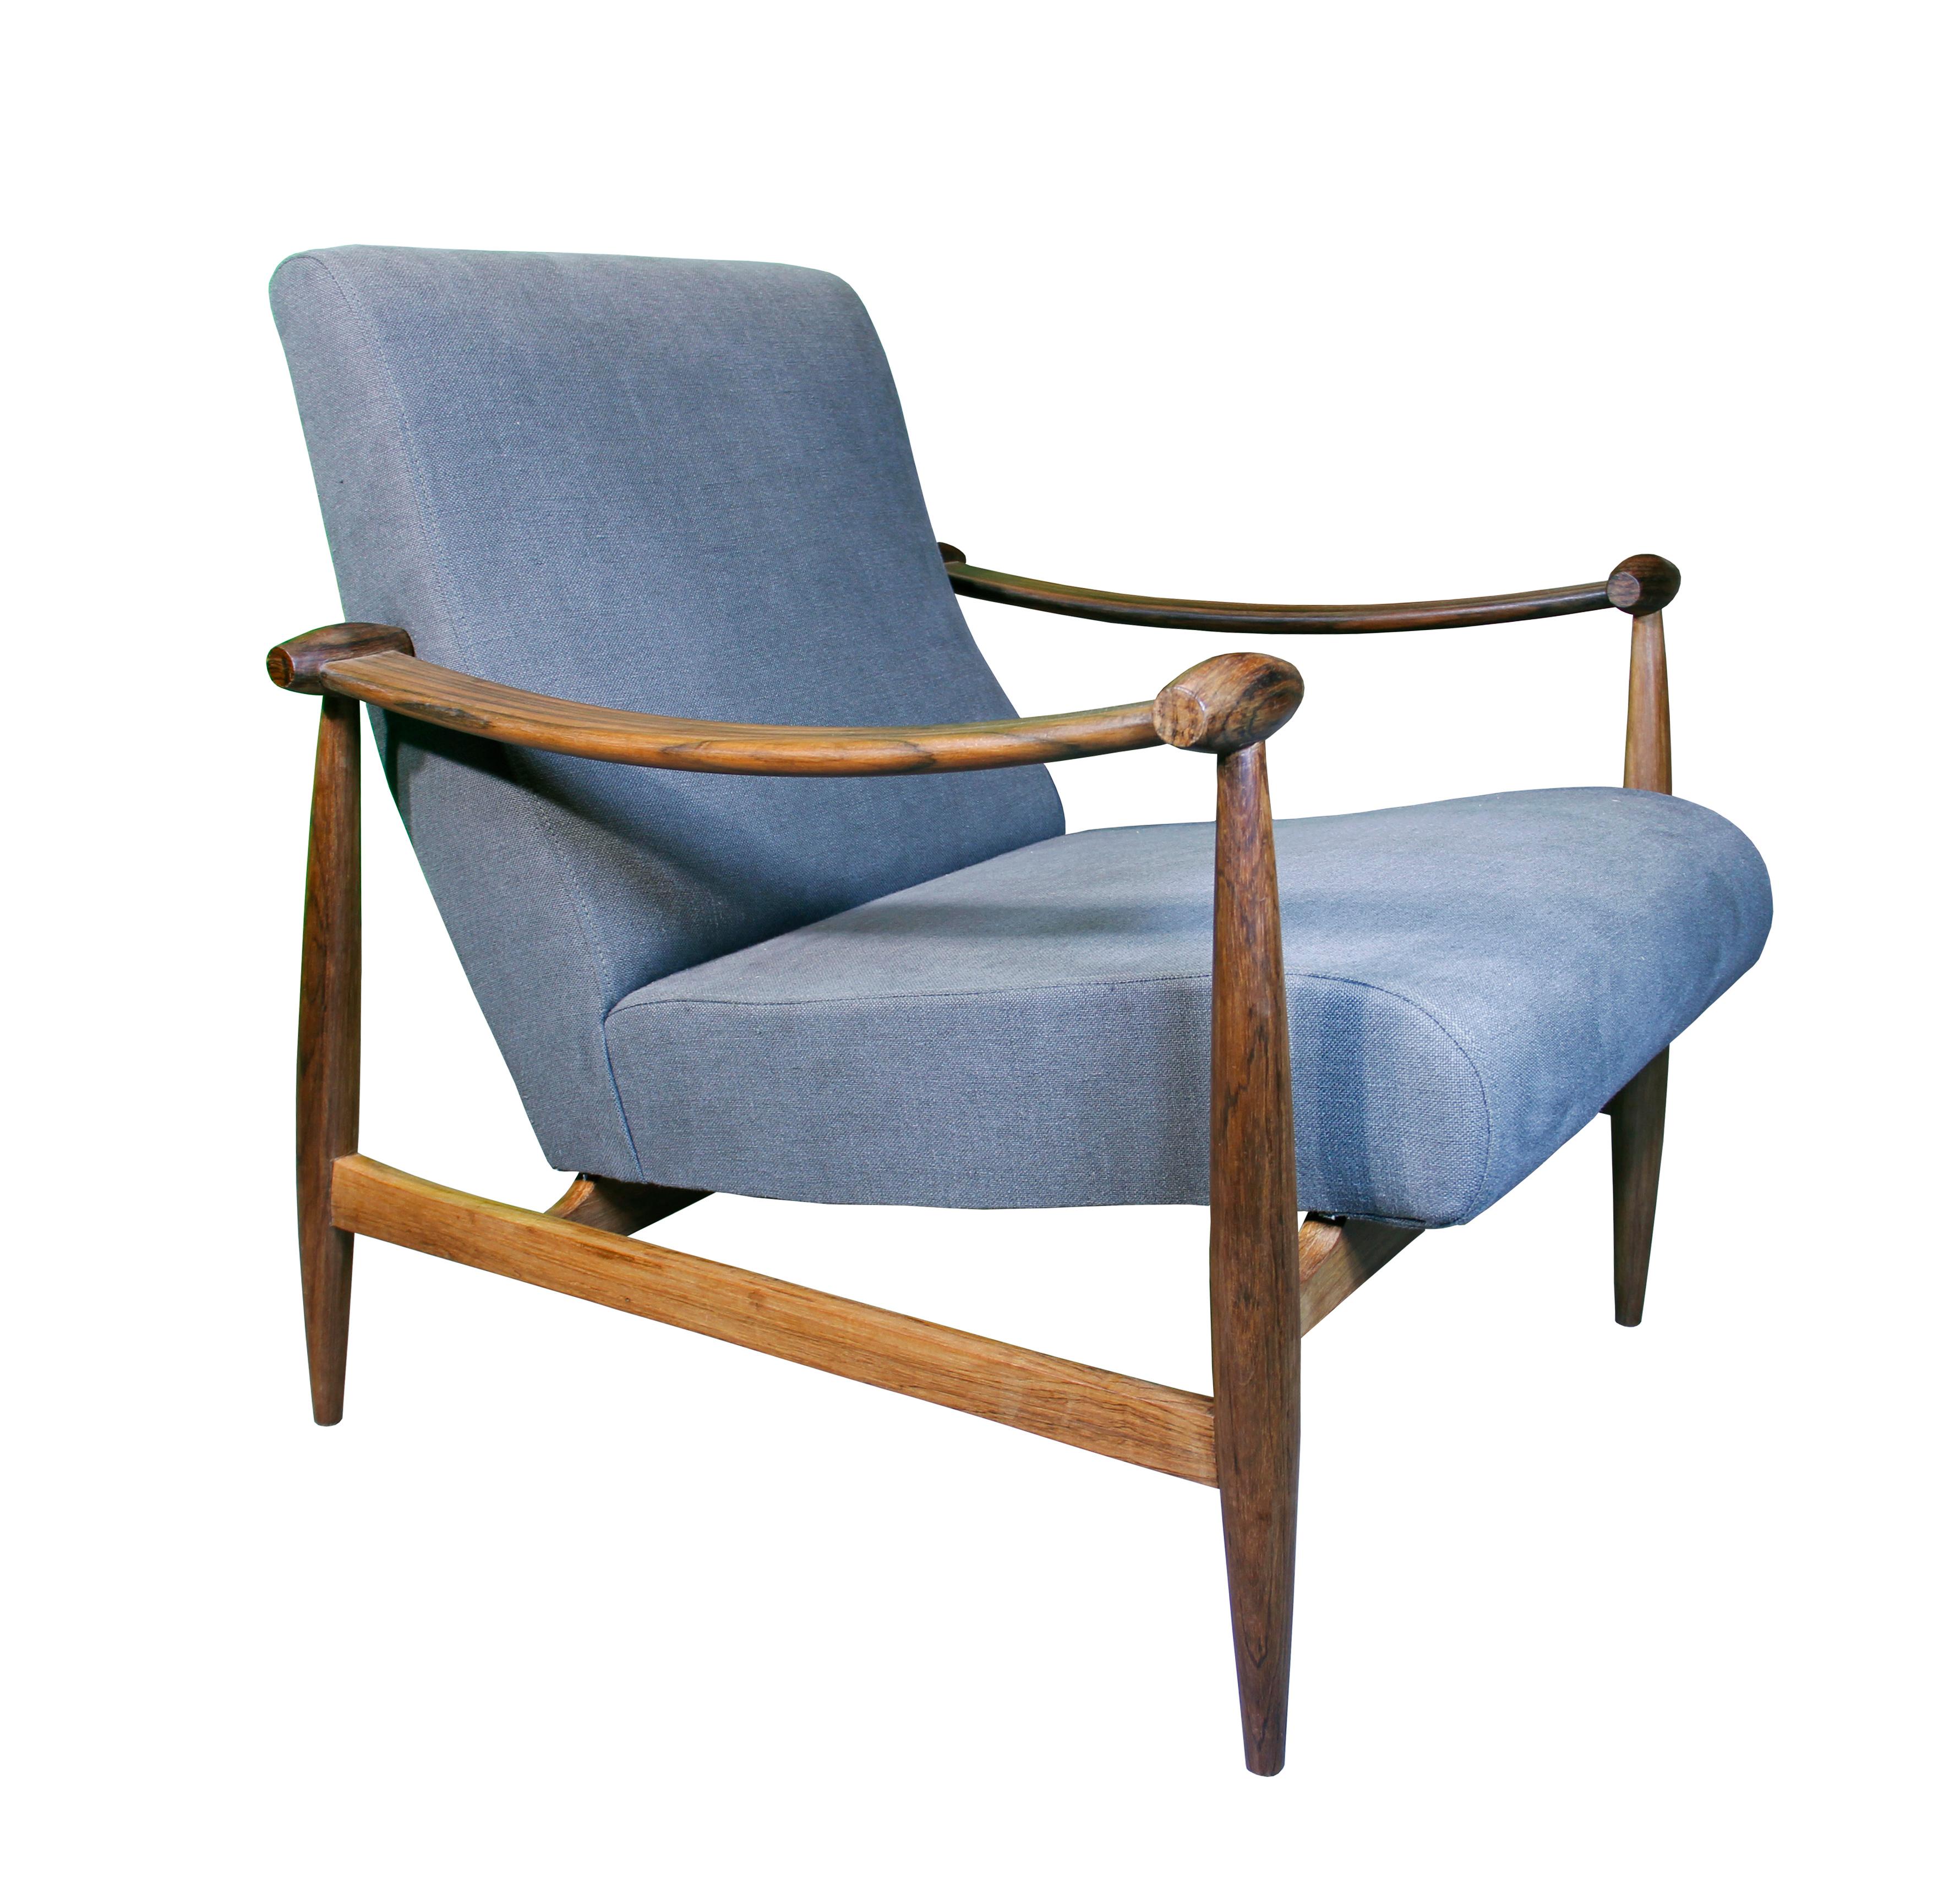 Paire de magnifiques fauteuils en bois massif conçus et fabriqués par Liceu de Artes e Oficios, São Paulo, années 1960.
Le design est inspiré d'une chaise de Finn Juhls.

Structure en bois massif avec nouveau revêtement en lin gris clair.
Le cadre